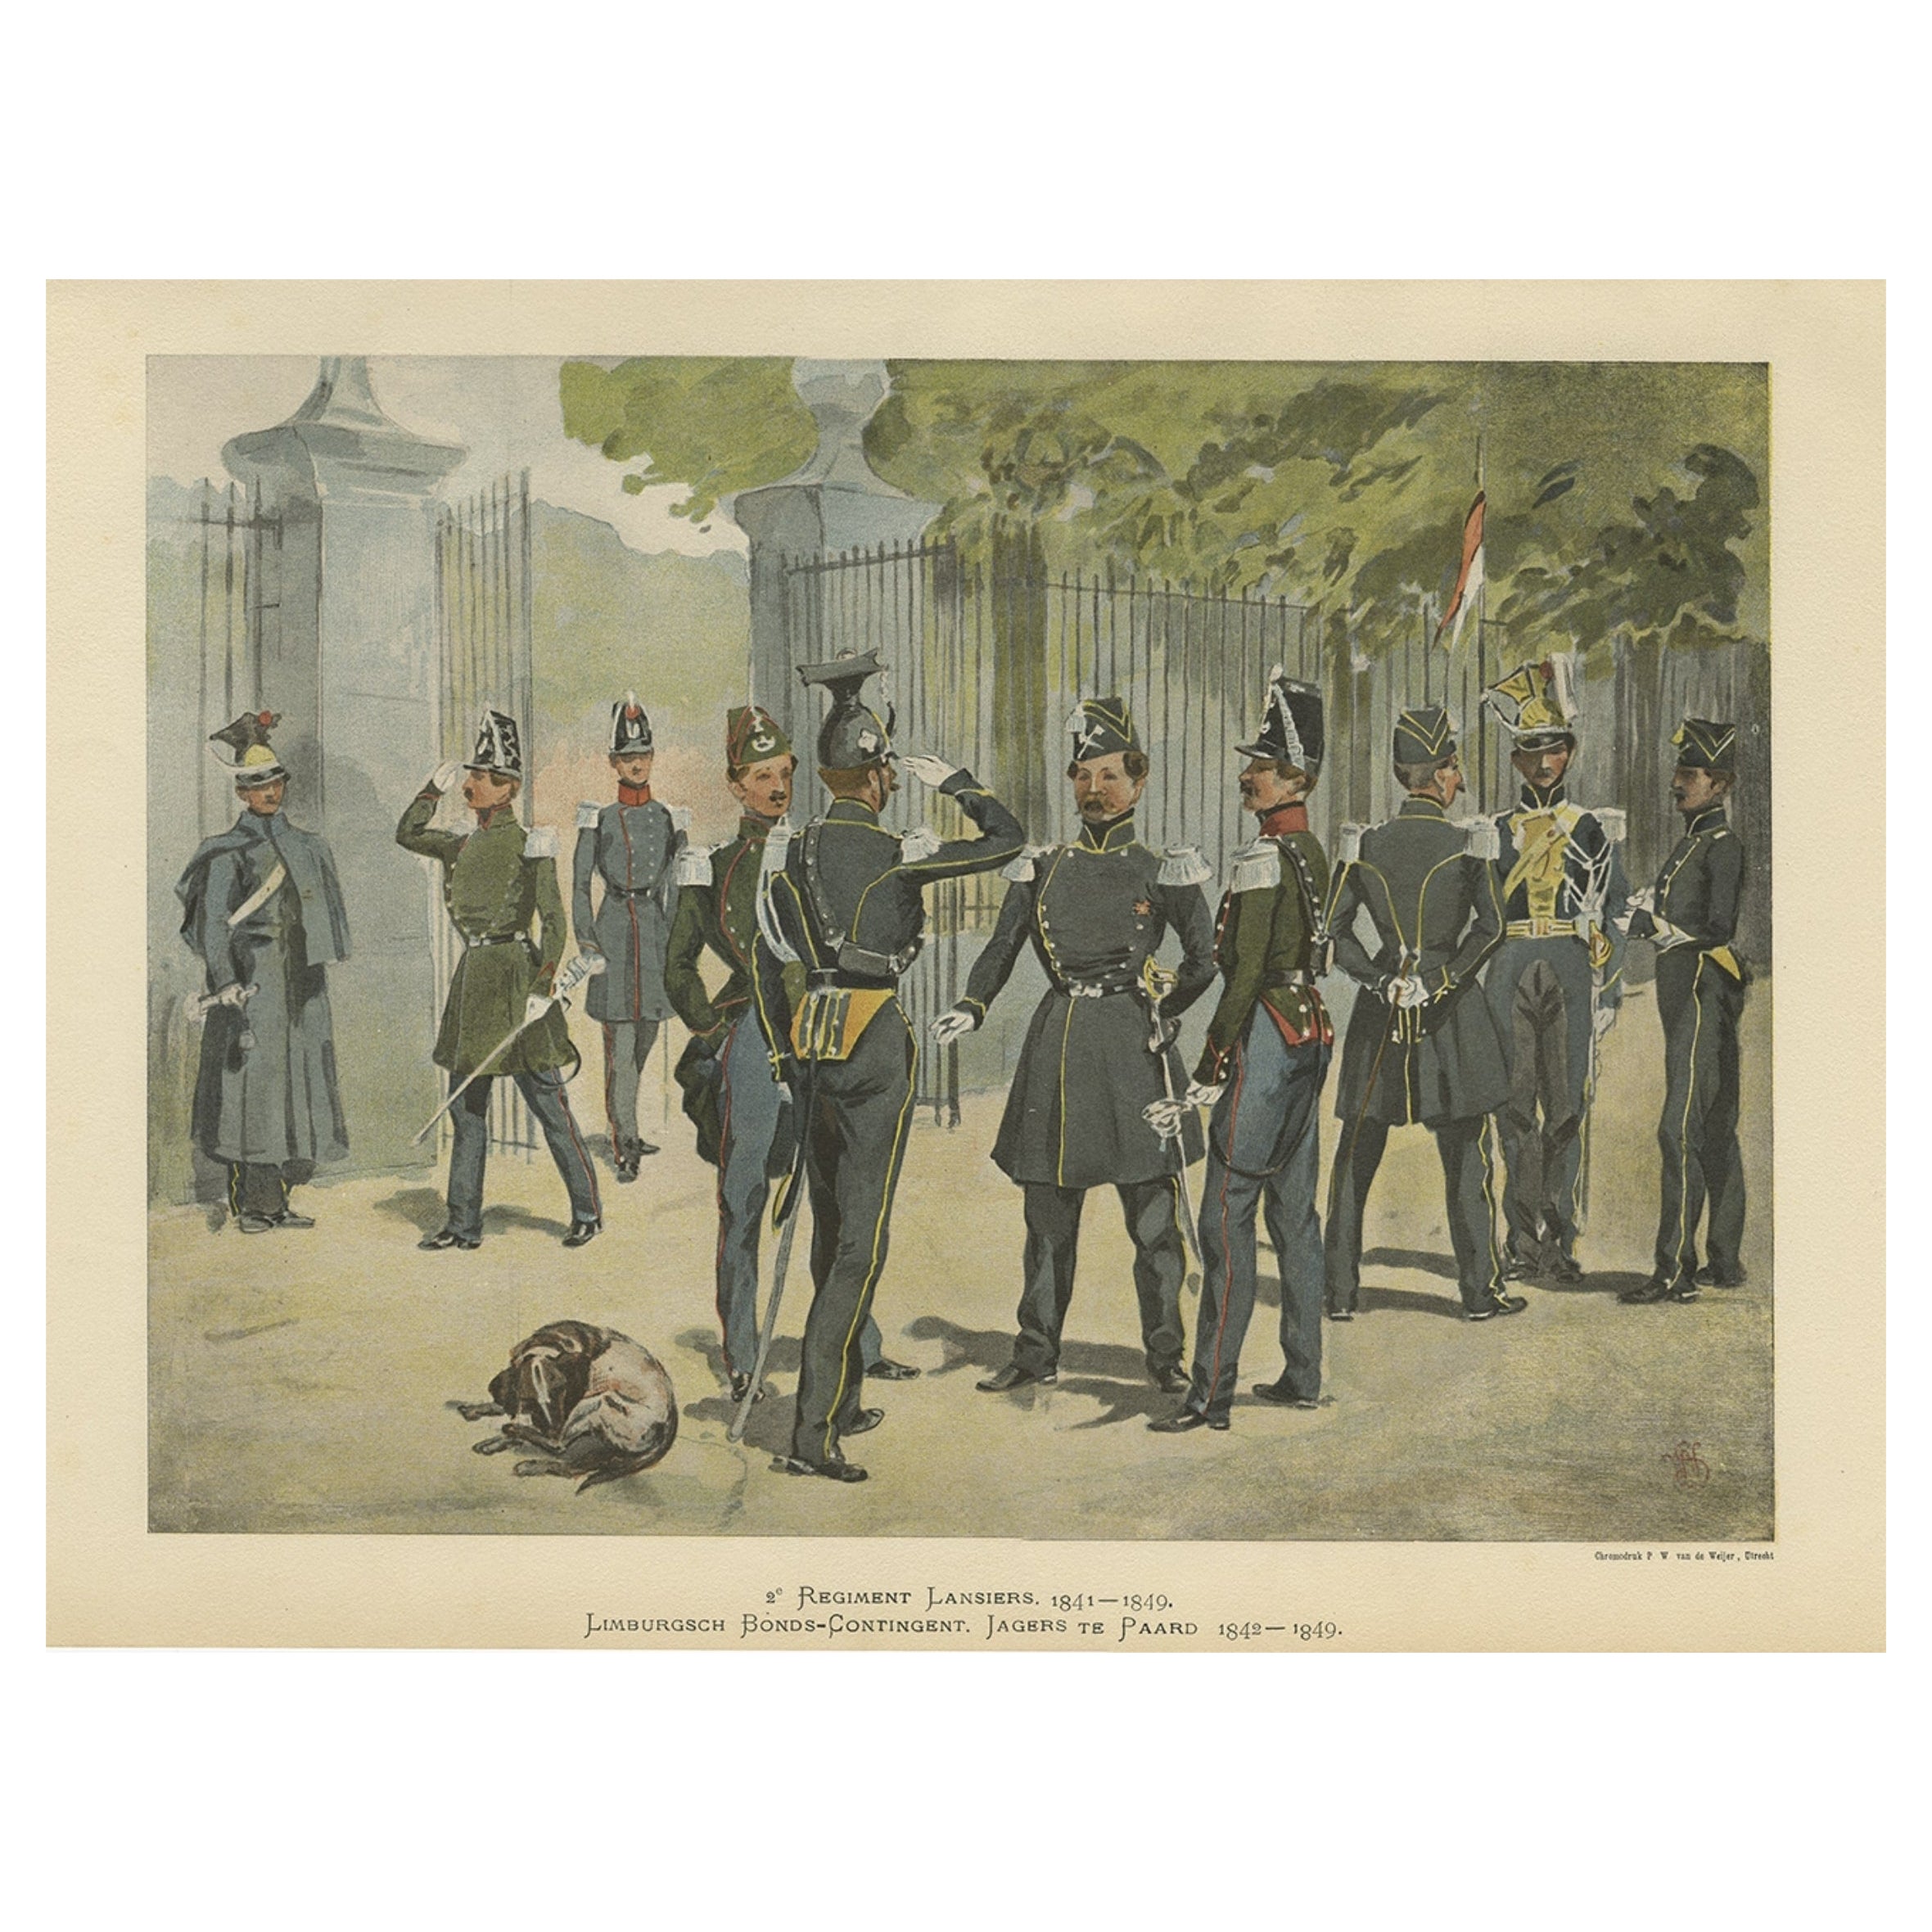 La Caballería del Ejército Holandés-Belga 1841-1849, Publicado en 1900